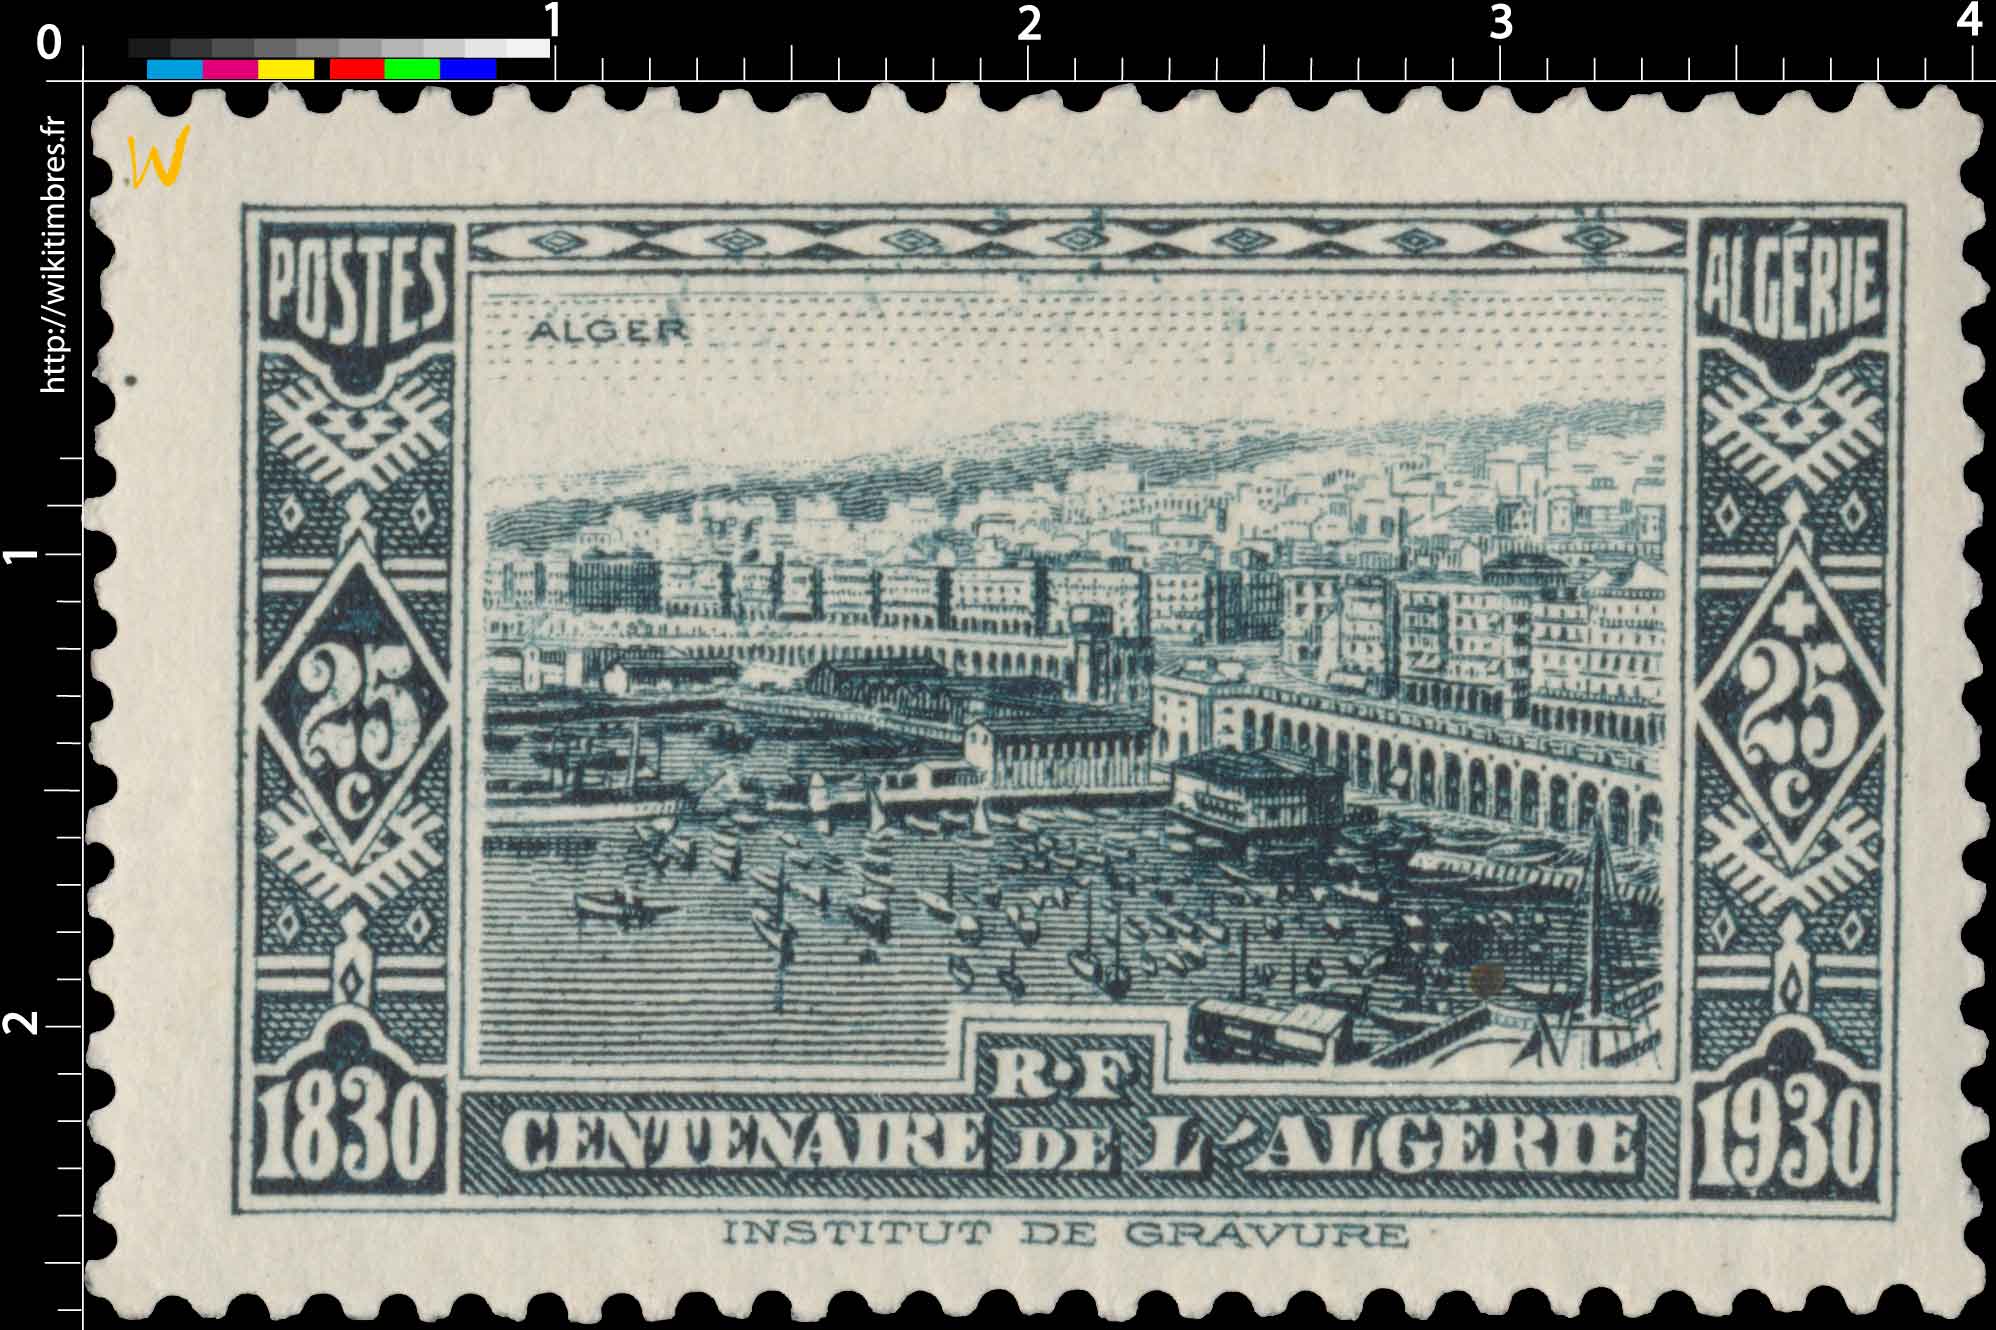 Algérie - Alger - Centenaire de l'Algérie 1830 - 1930